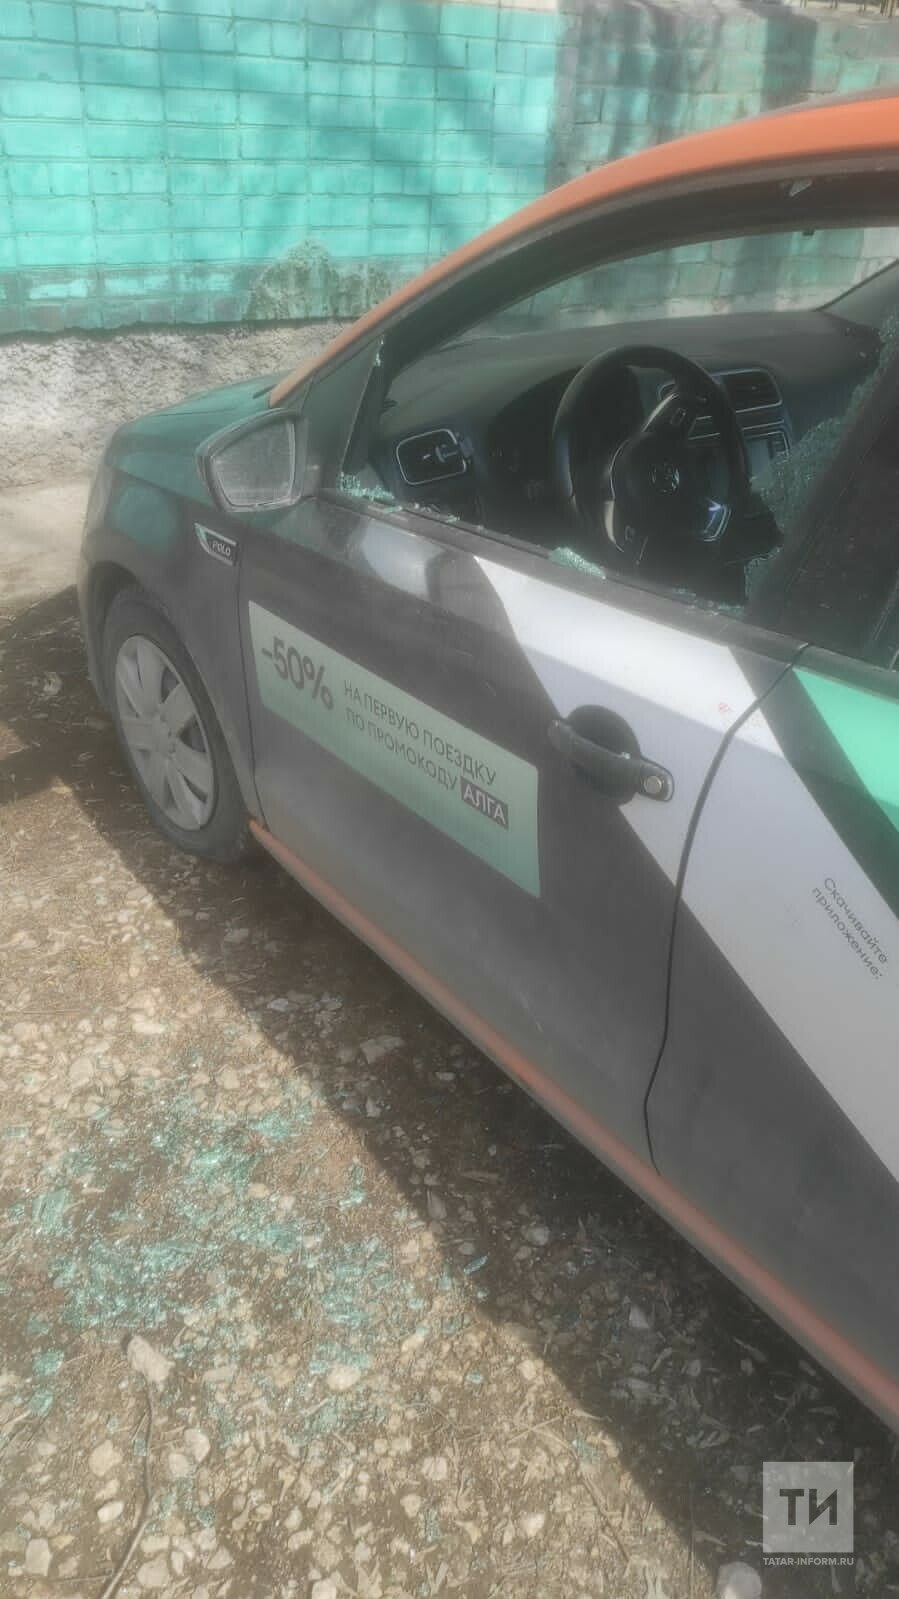 Казанец украл с каршерингового авто фары, чтобы переставить на свой автомобиль